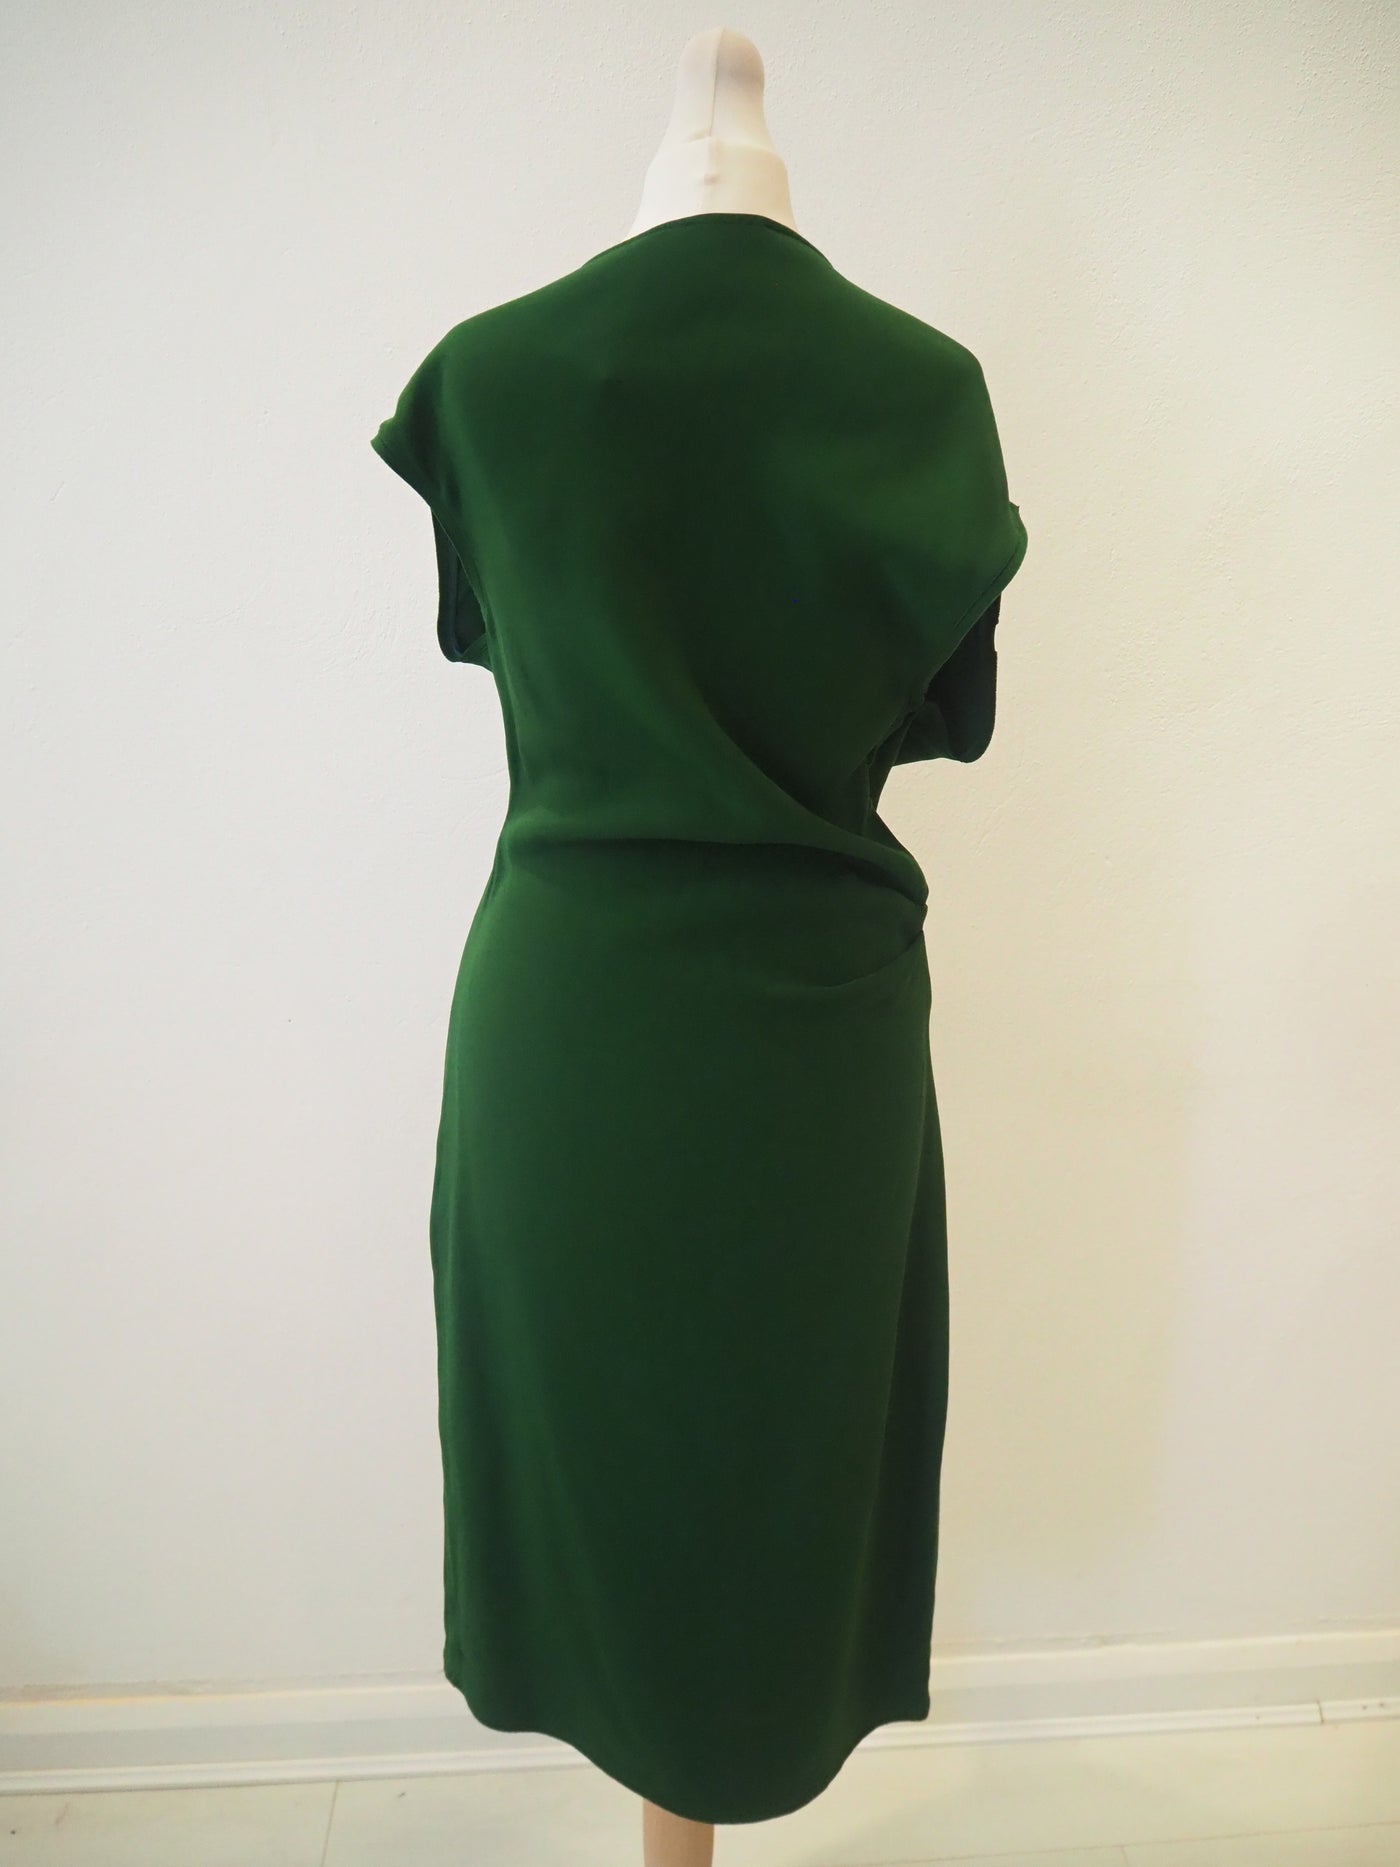 Reiss Green Dress Size 10